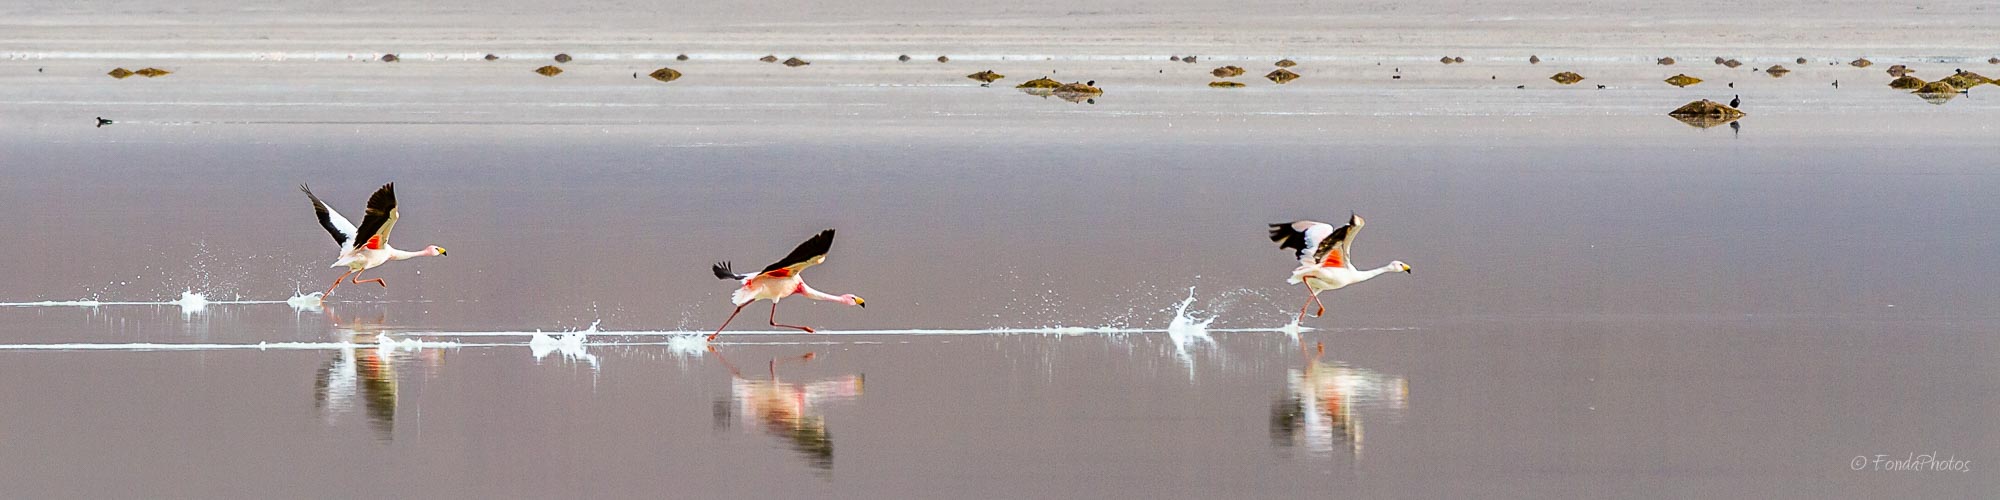 James Flamingos, Laguna Blanca, Bolivia